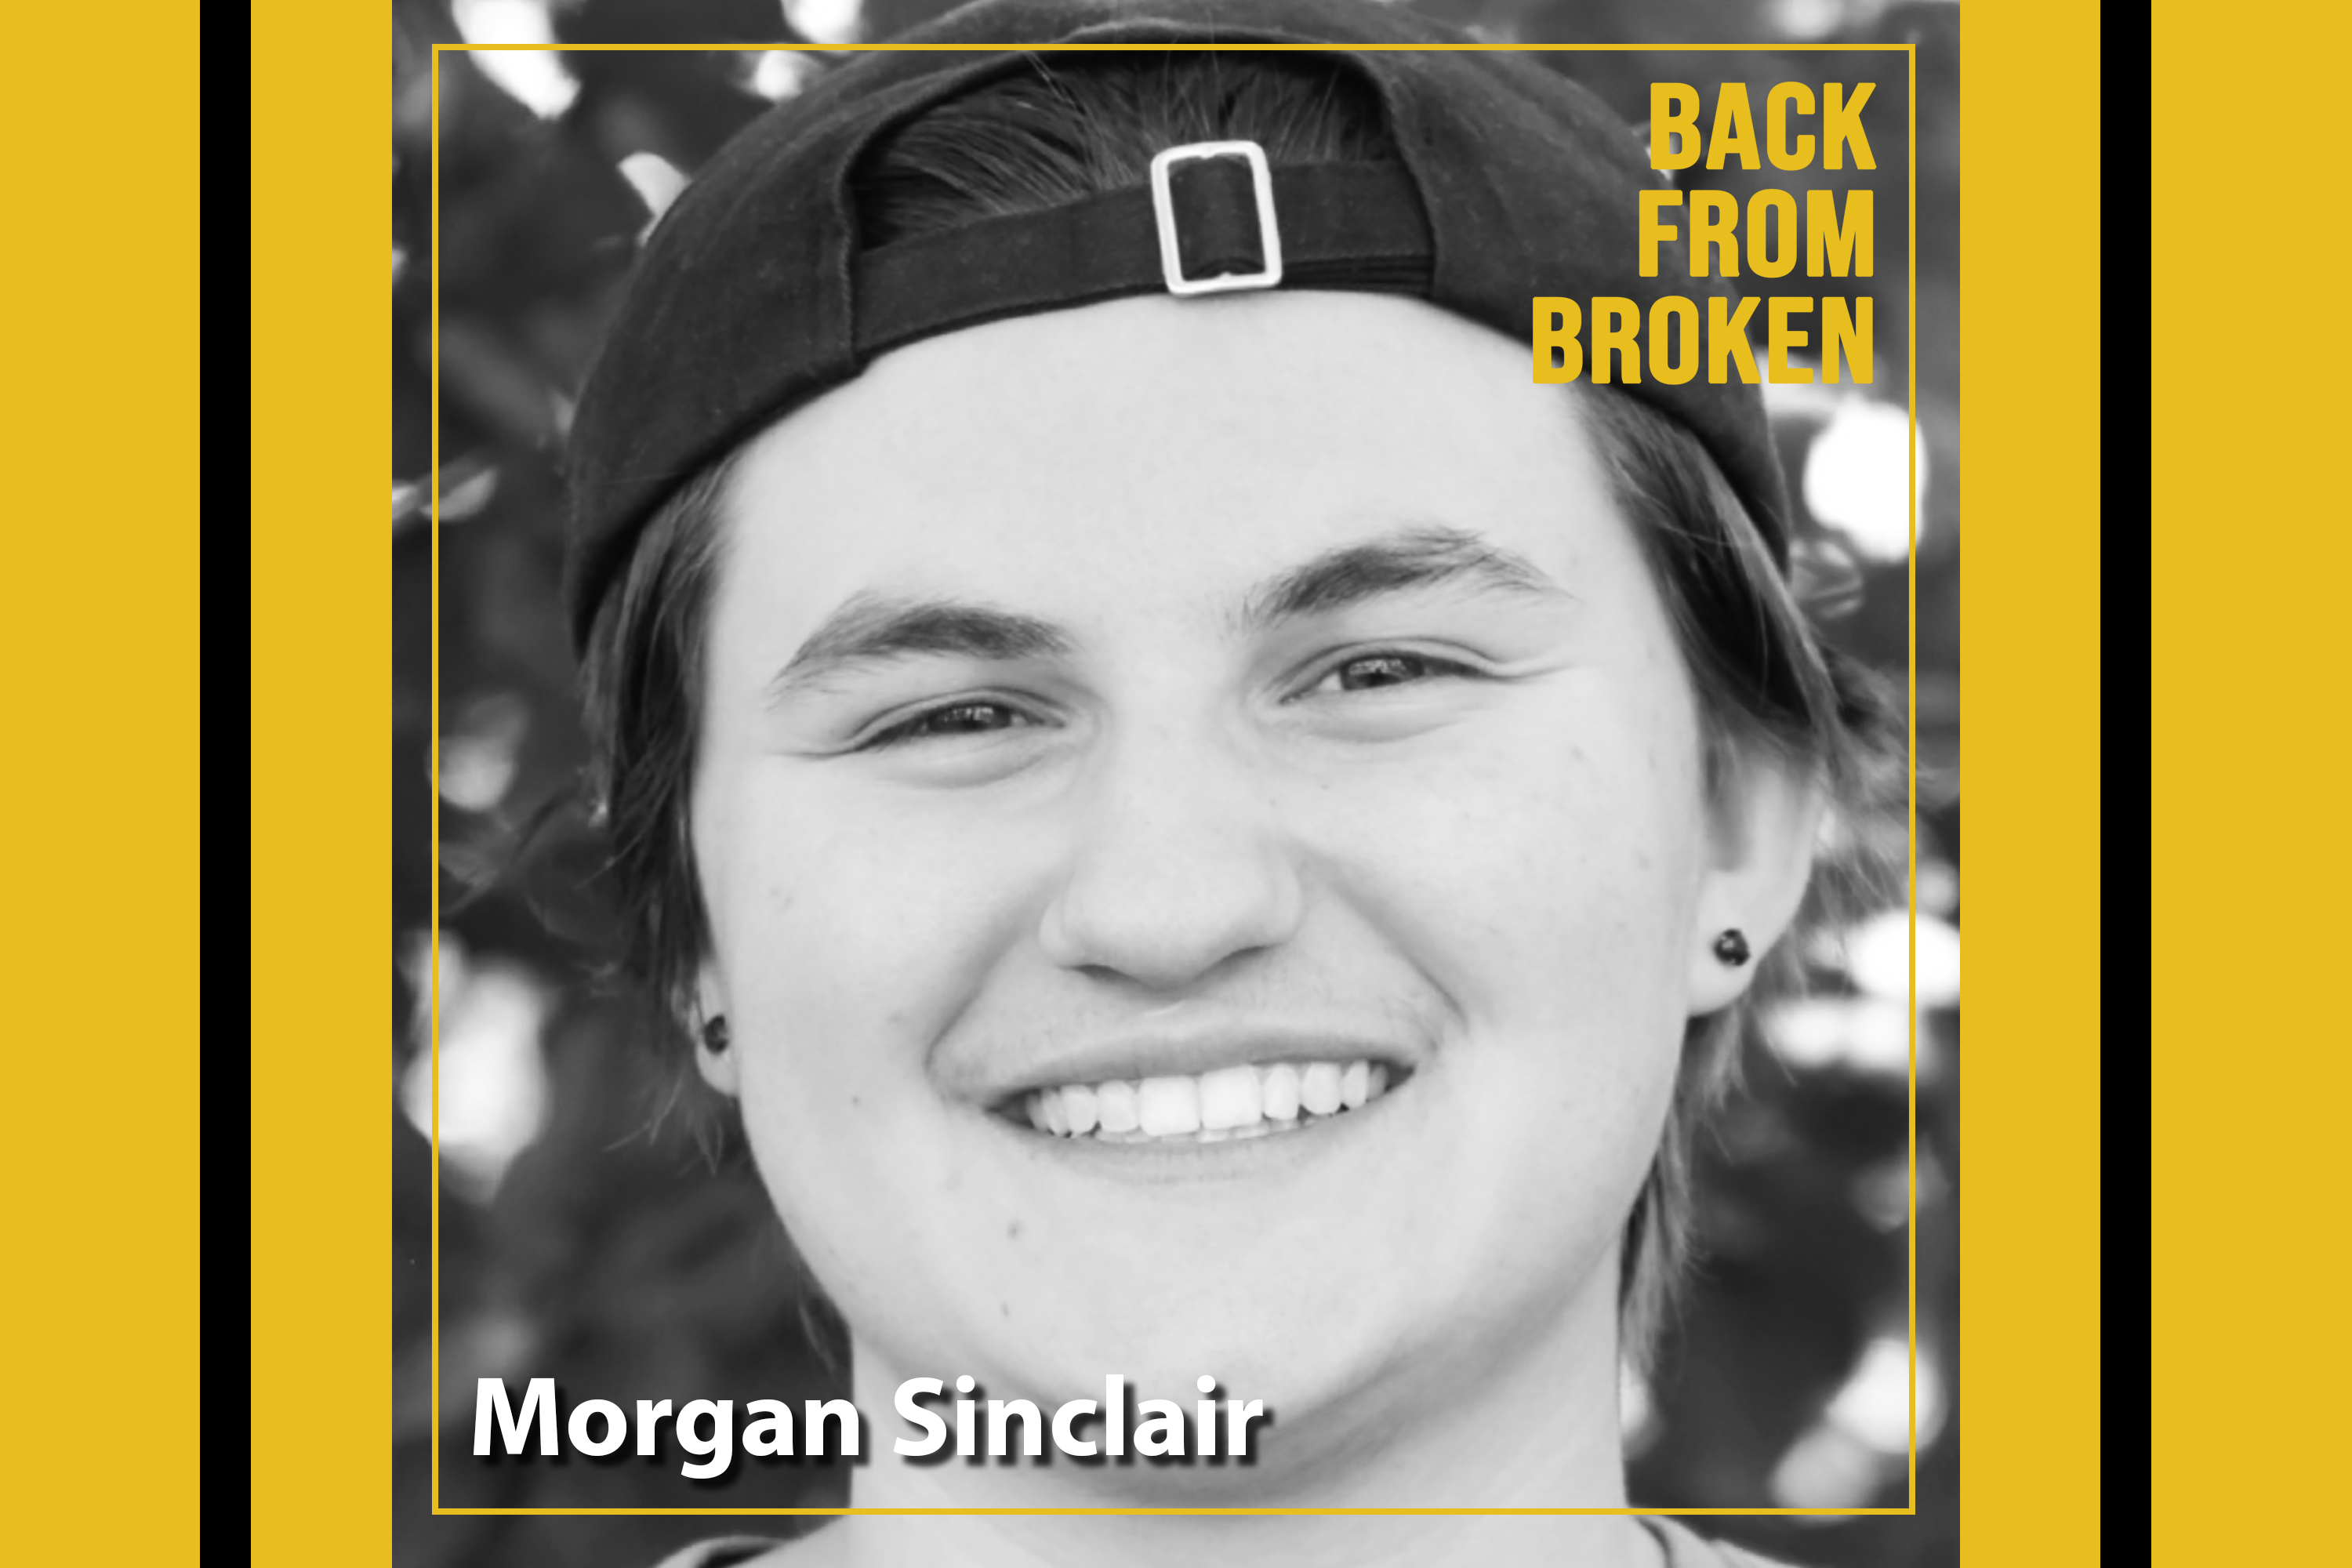 Morgan Sinclair on Back from Broken